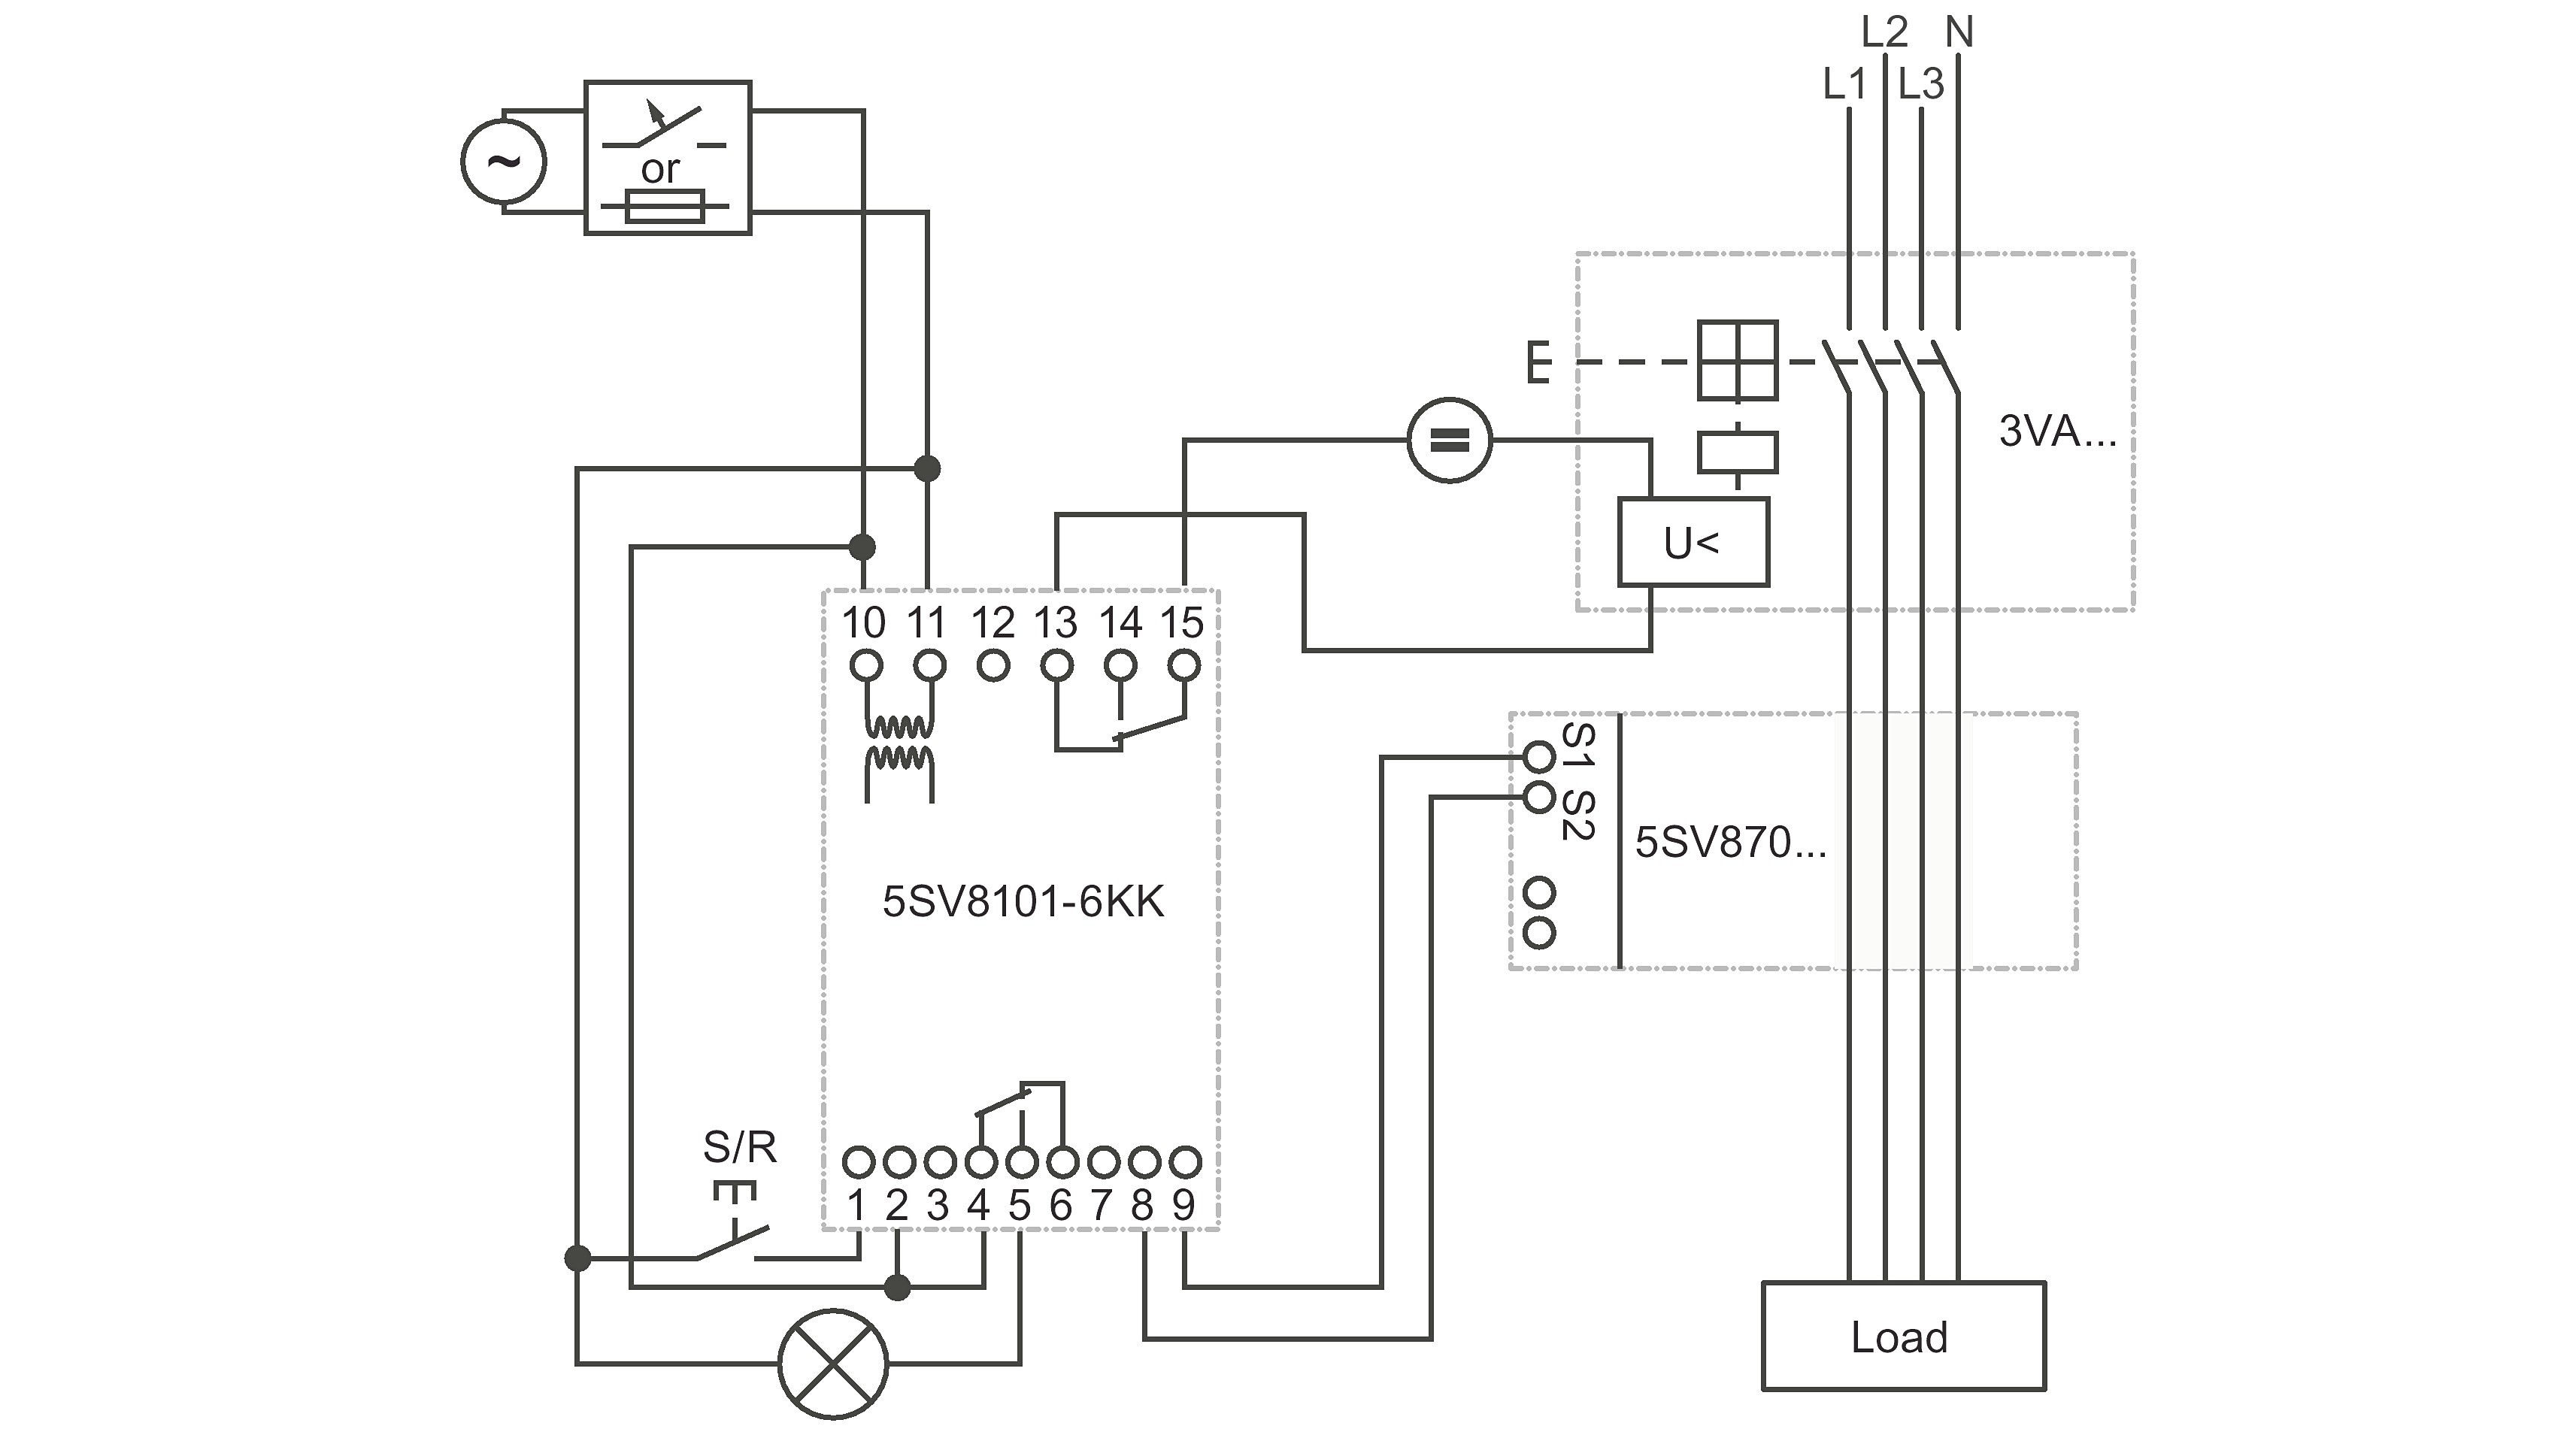 Circuit Breaker Diagram Fresh Wiring Diagram for Shunt Trip Circuit Breaker Wiring Diagram